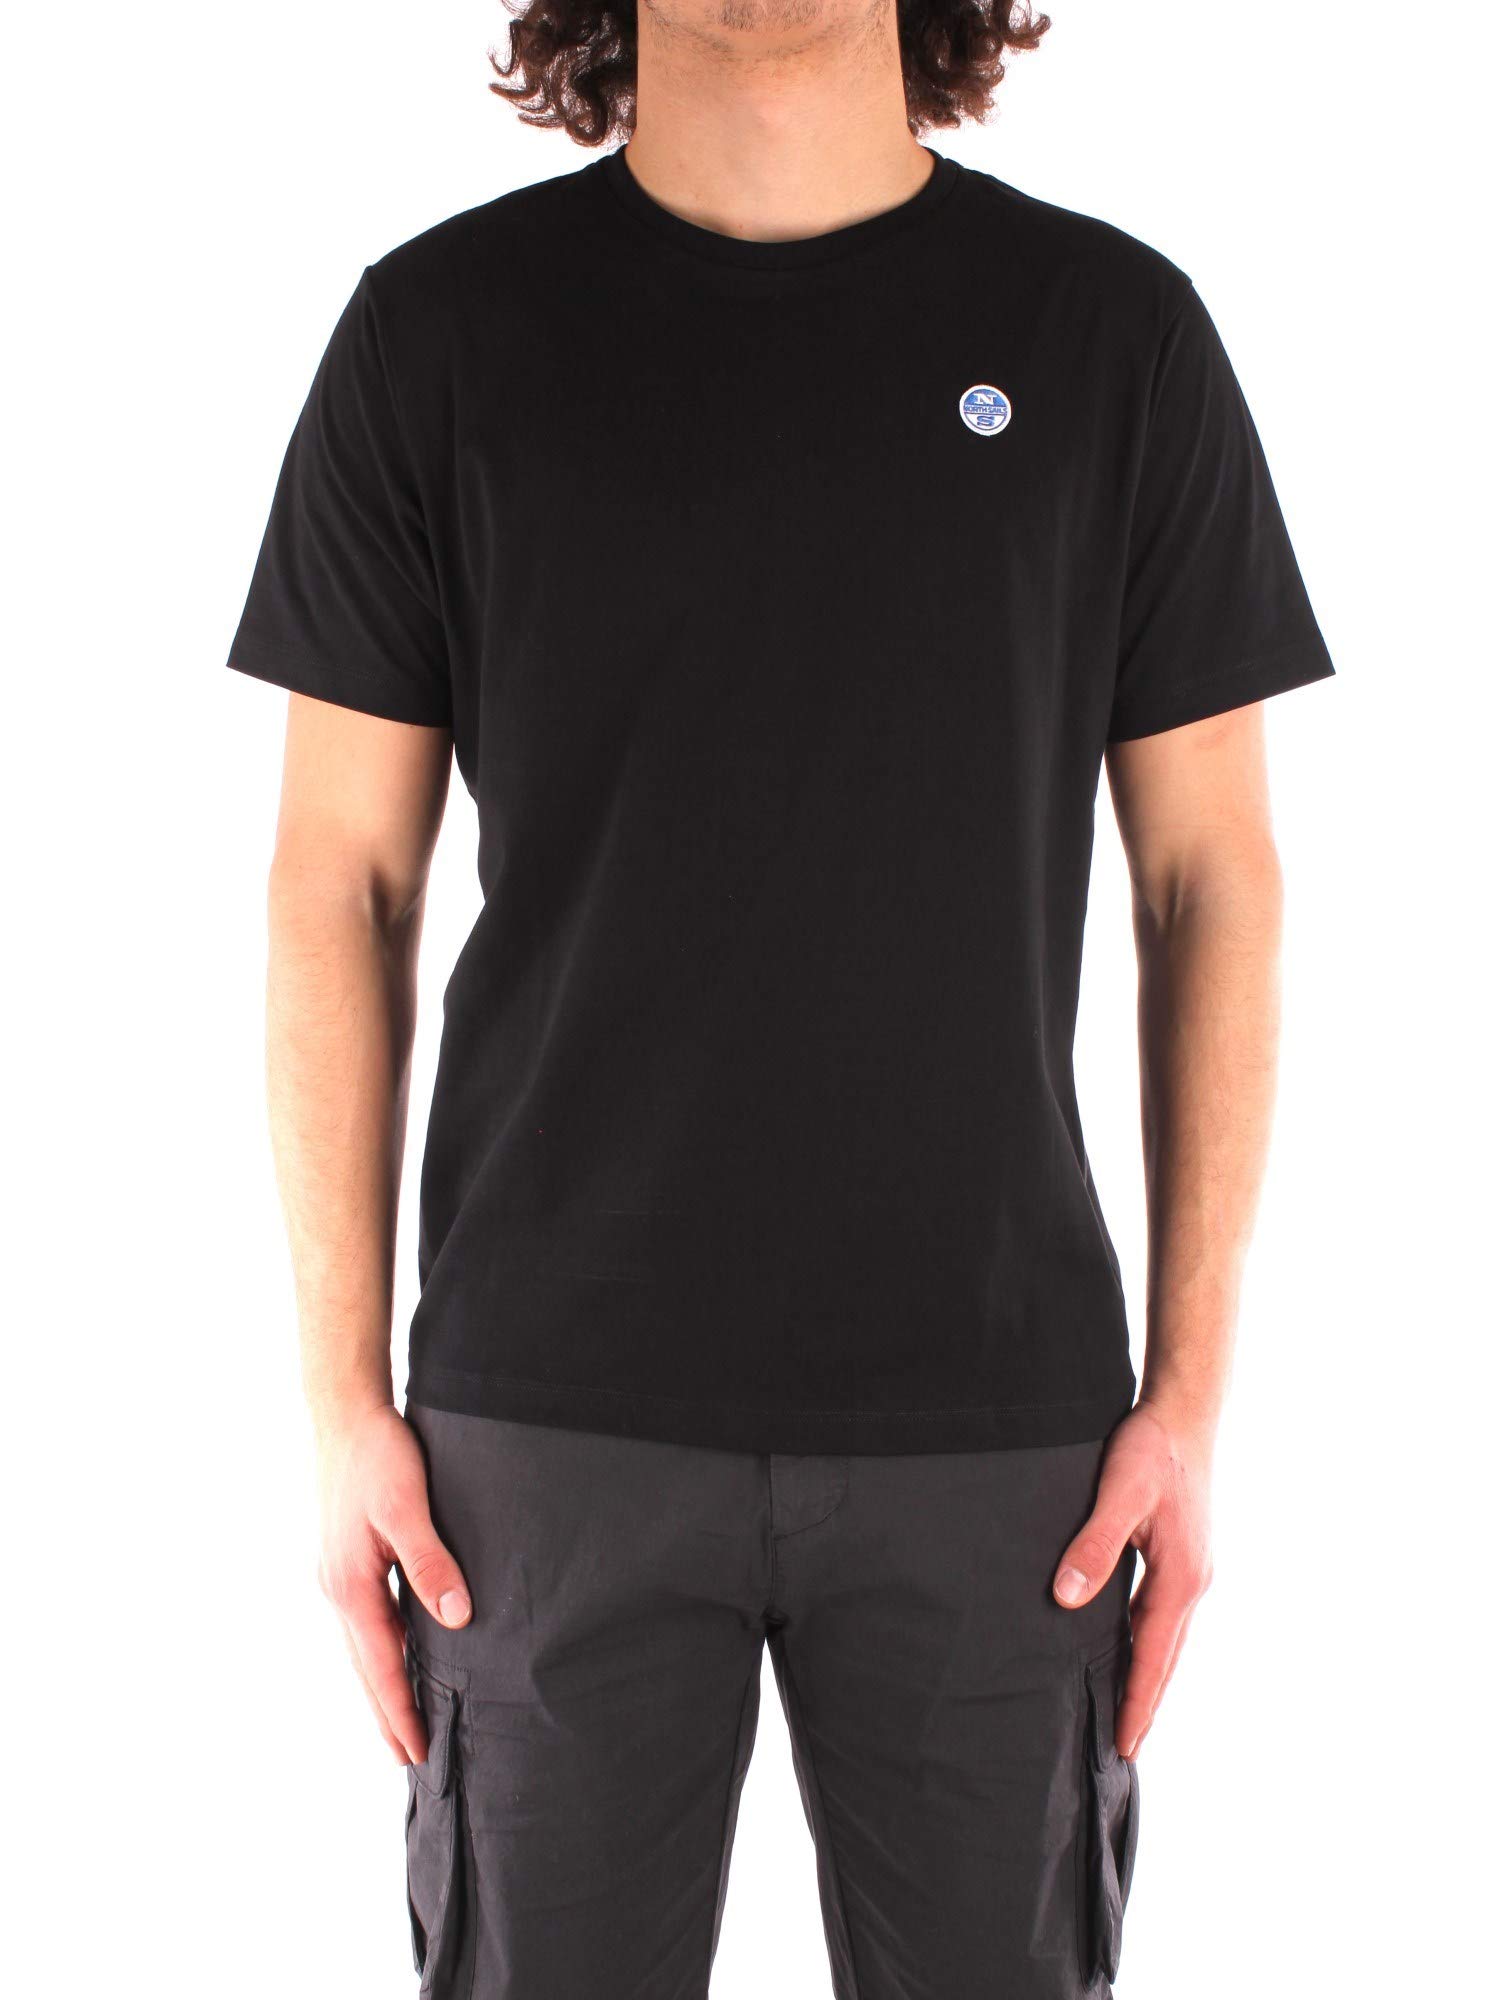 NORTH SAILS Herren T-Shirt in Schwarz Baumwolljersey - Kurz Arm mit Rundhalsausschnitt - Normale Passform - XL